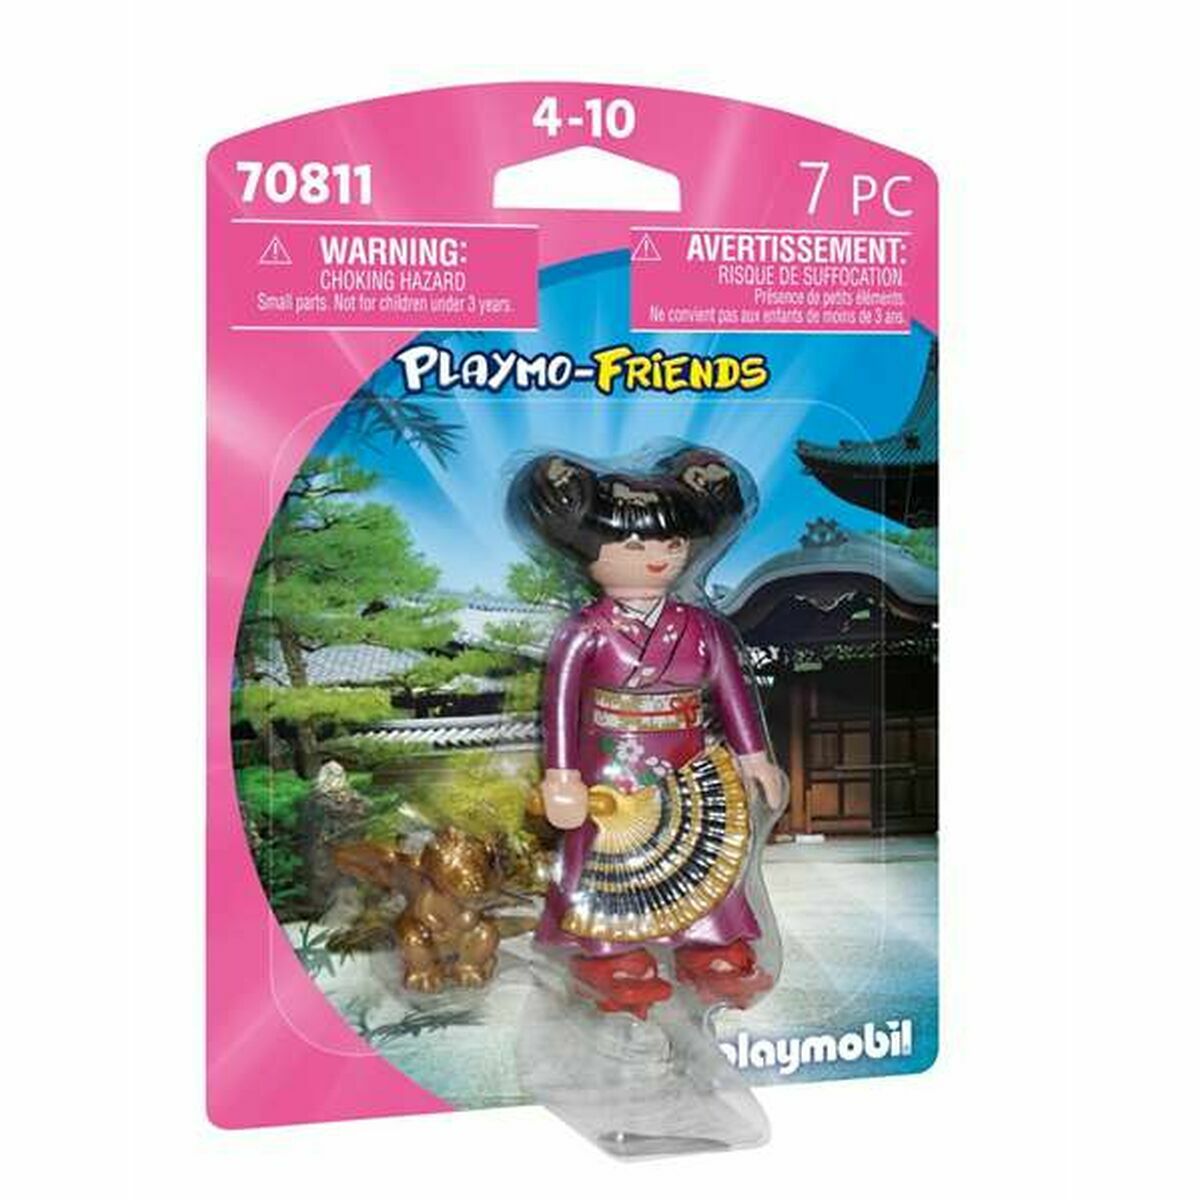 Figura îmbinată Playmobil Playmo-Friends 70811 Japoneză Prințesă (7 pcs)